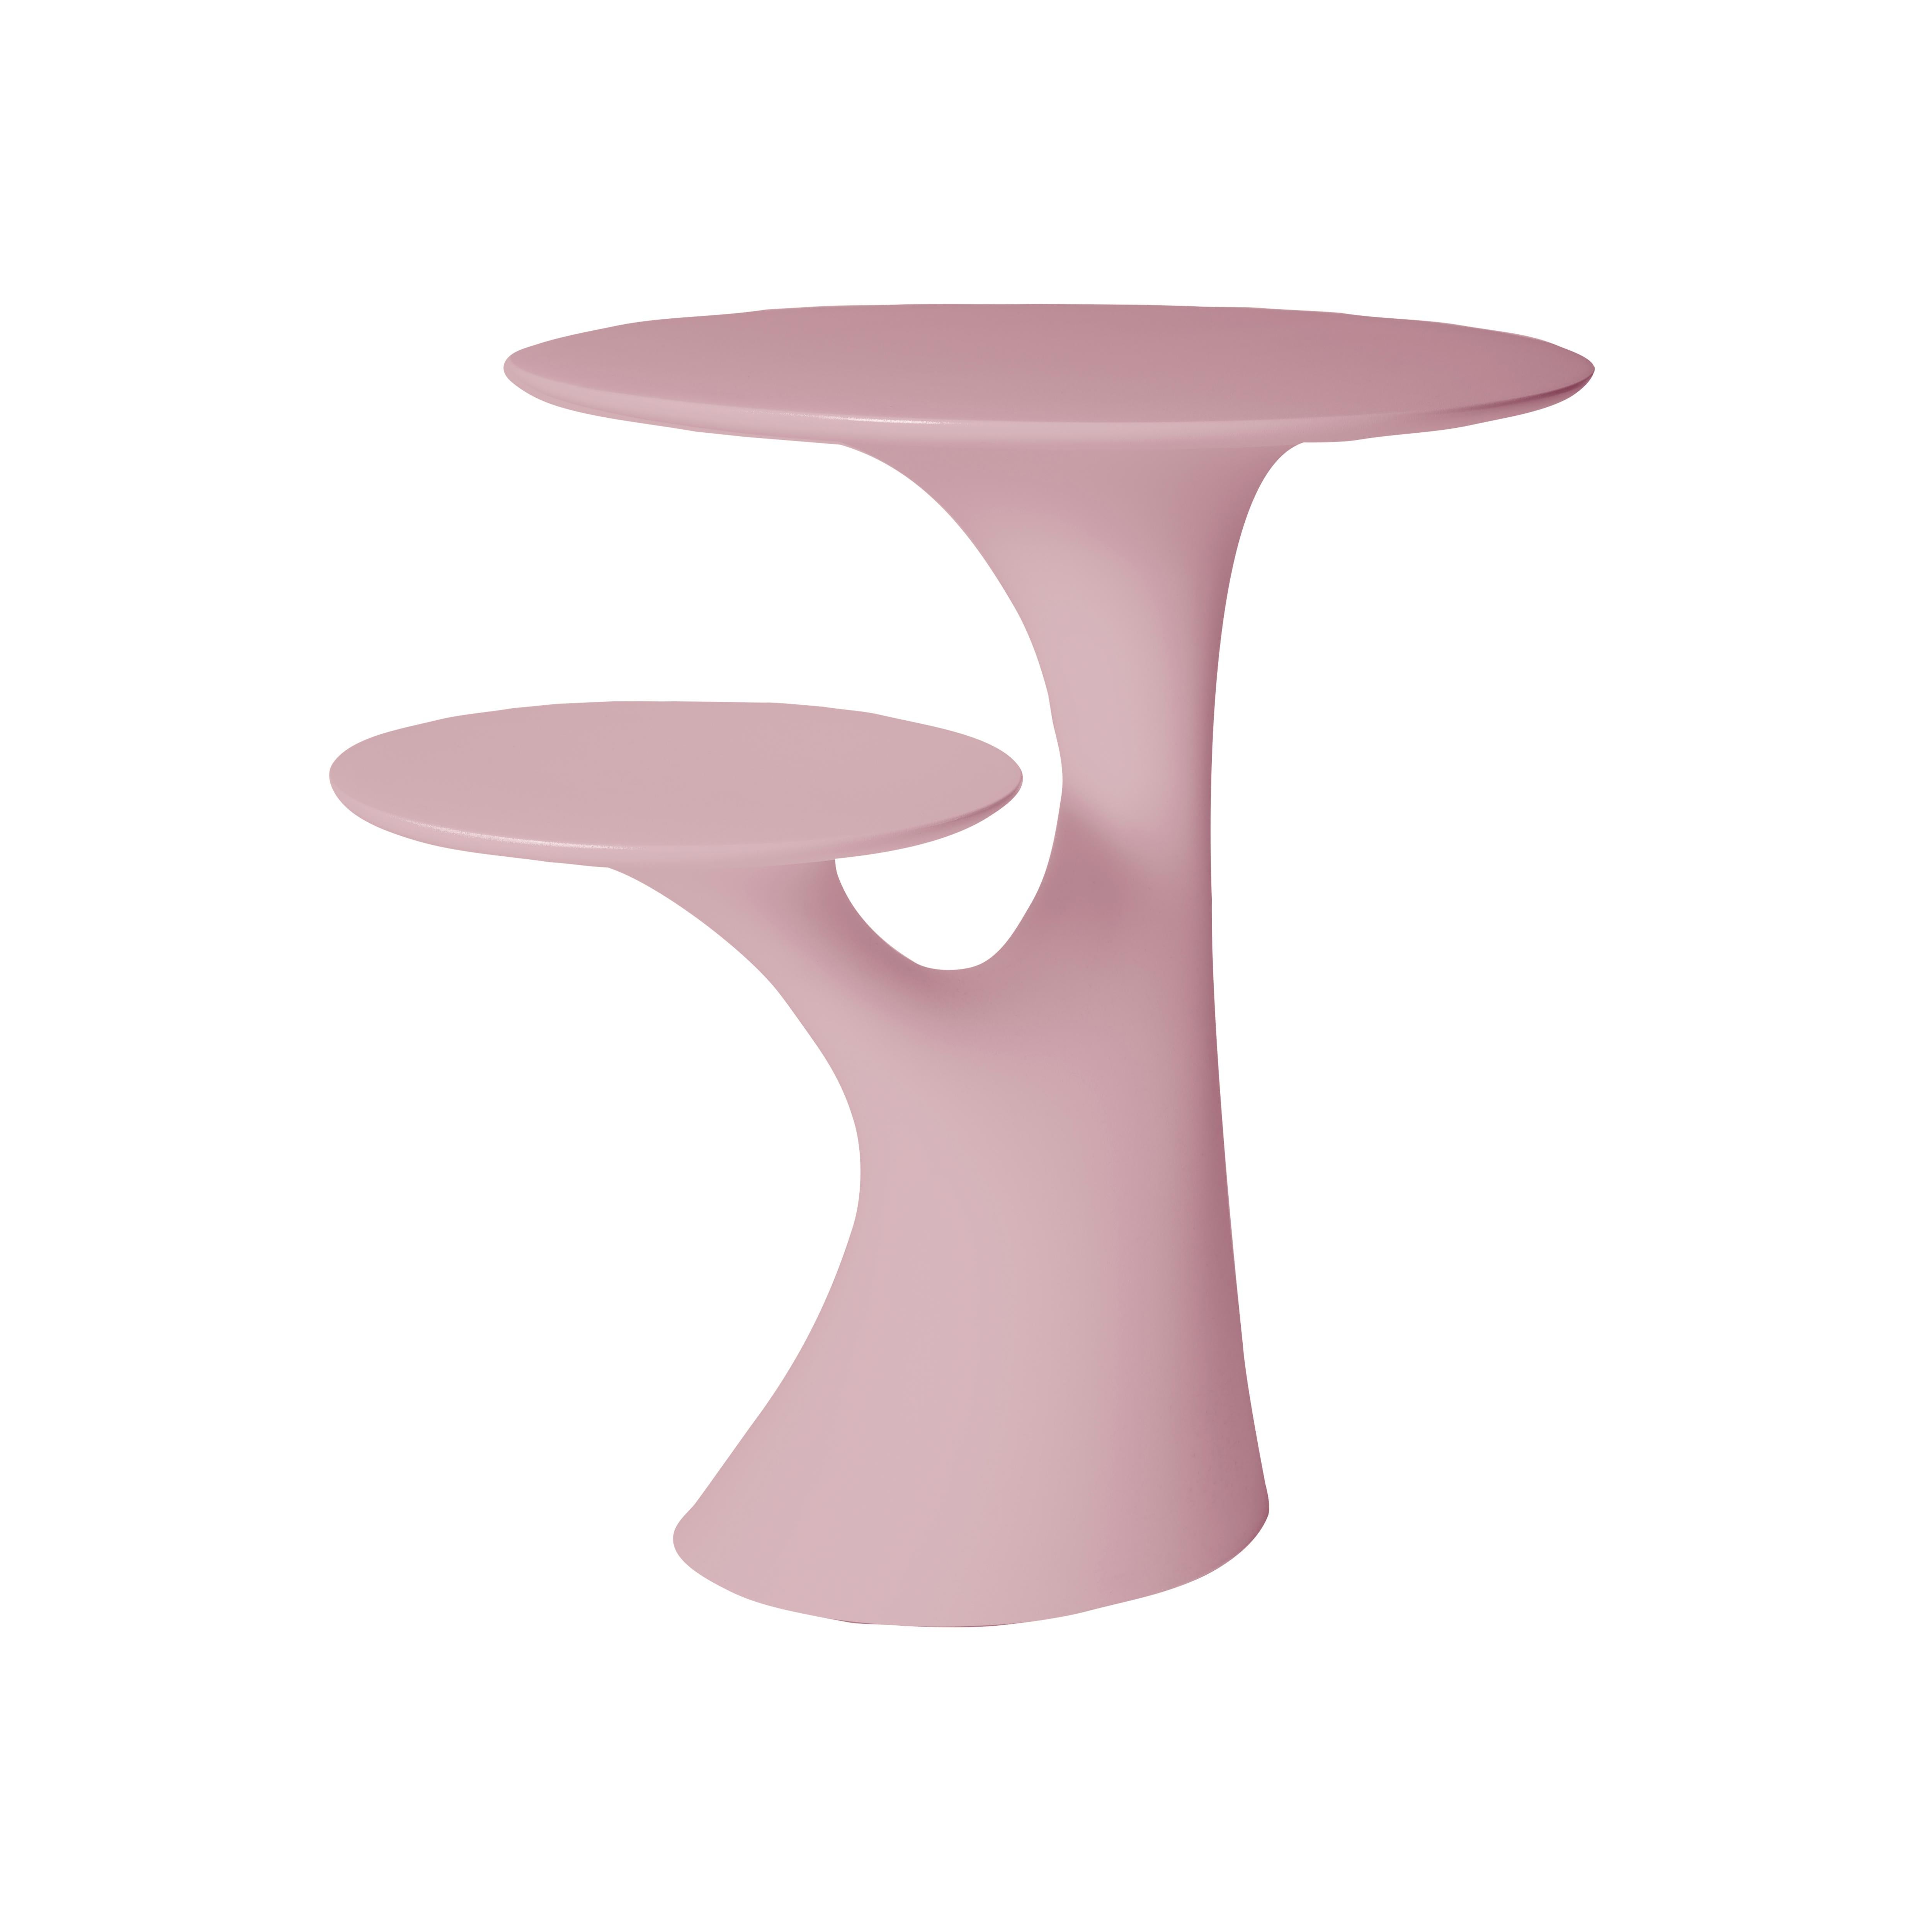 En vente : Pink Table d'appoint moderne en plastique blanc, gris, vert, rose ou en forme d'arbre par Stefano Giovannoni 2